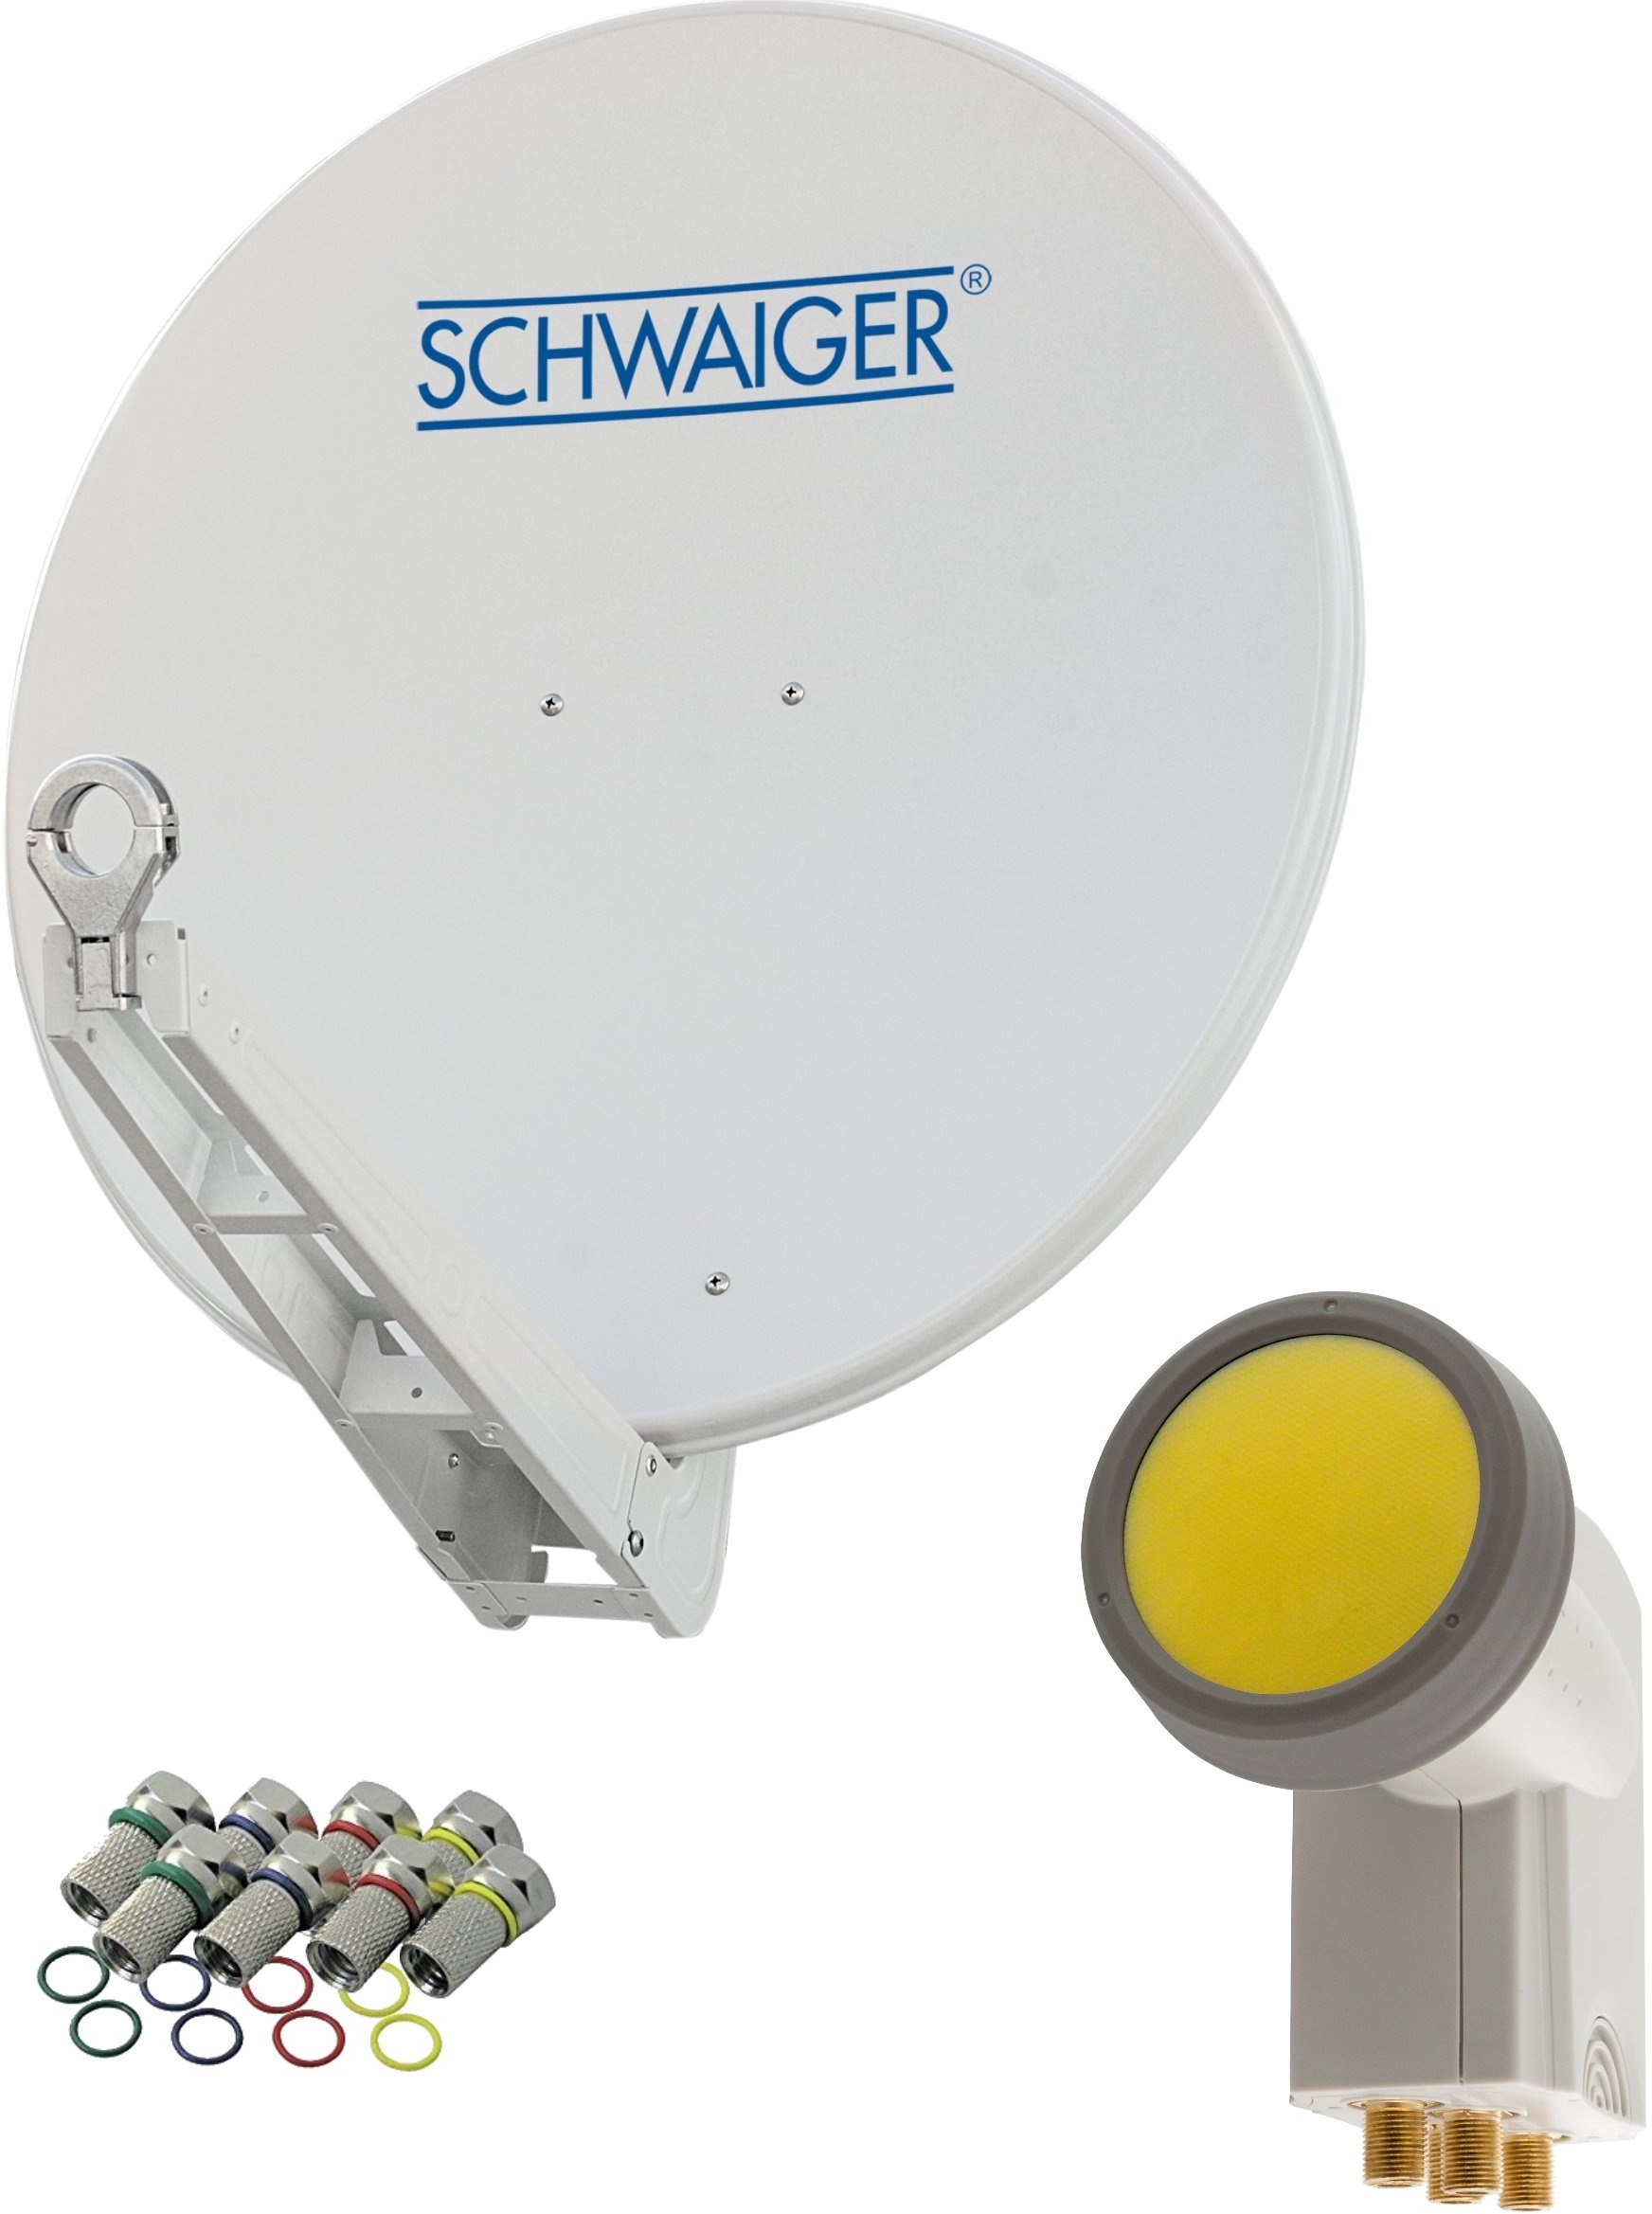 SCHWAIGER -4623- Sat Anlage, Satellitenschüssel mit Quad LNB (digital) & 8 F-Steckern 7 mm, Sat Antenne aus Aluminium, Hellgrau, 75 x 80 cm